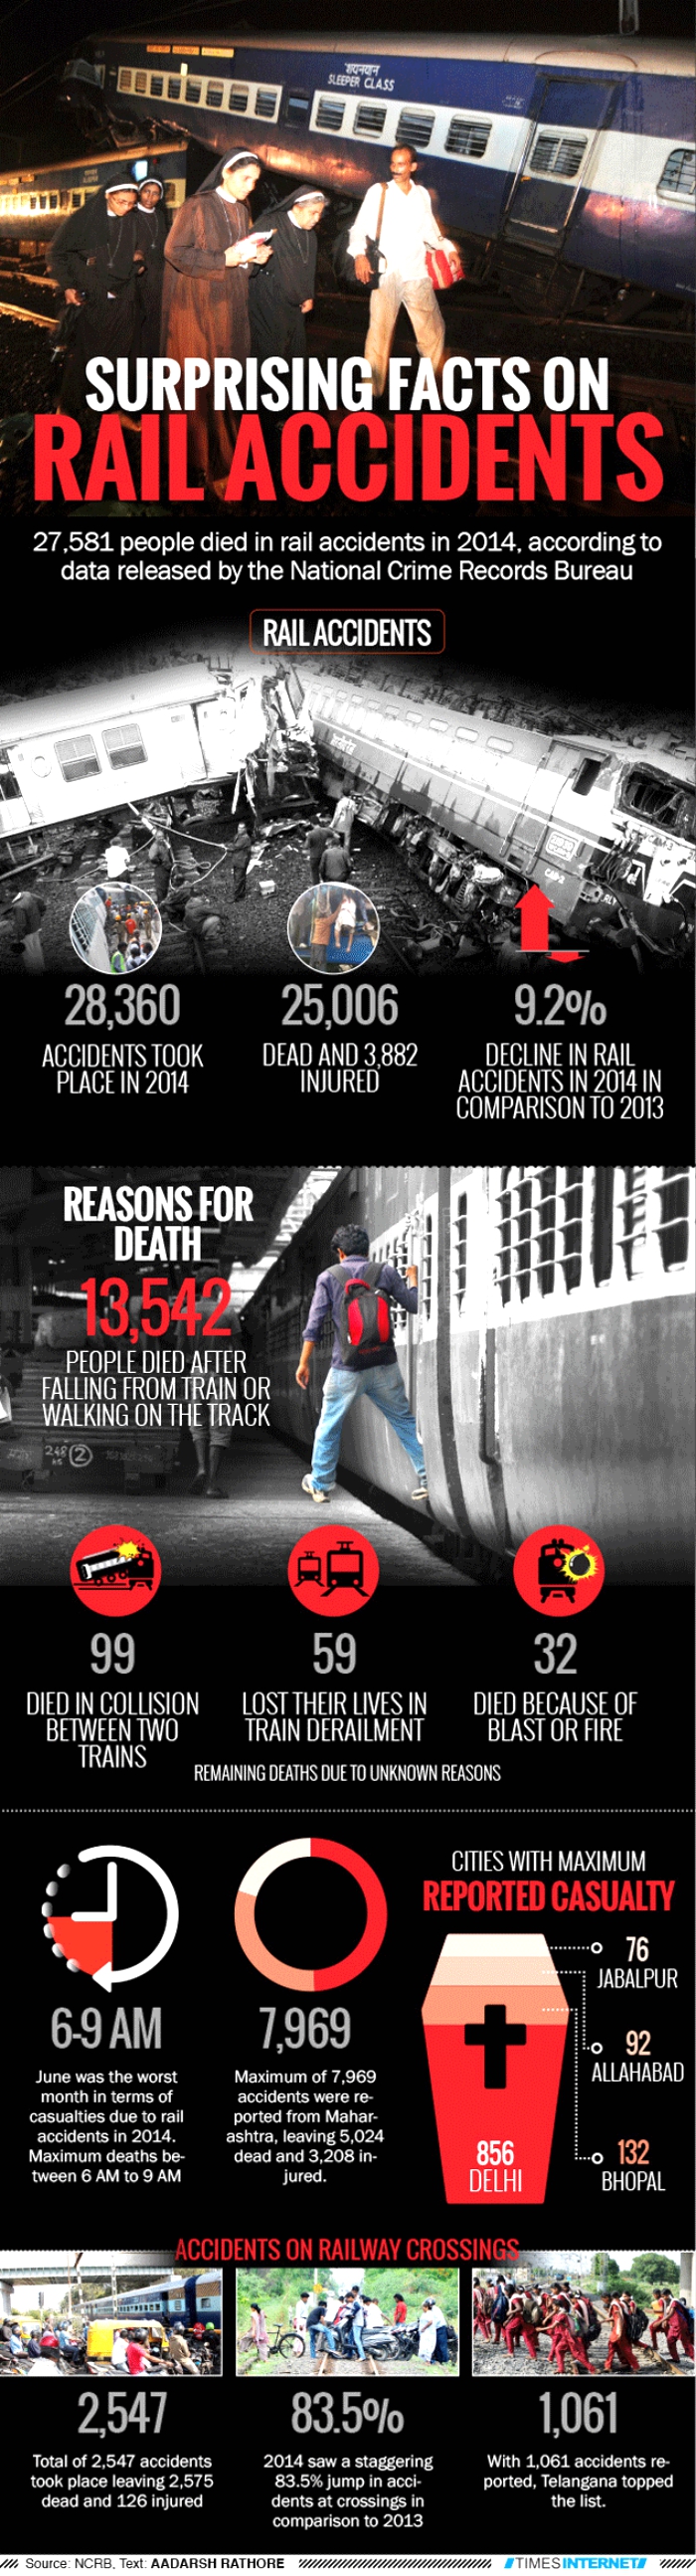 Railway accidents india